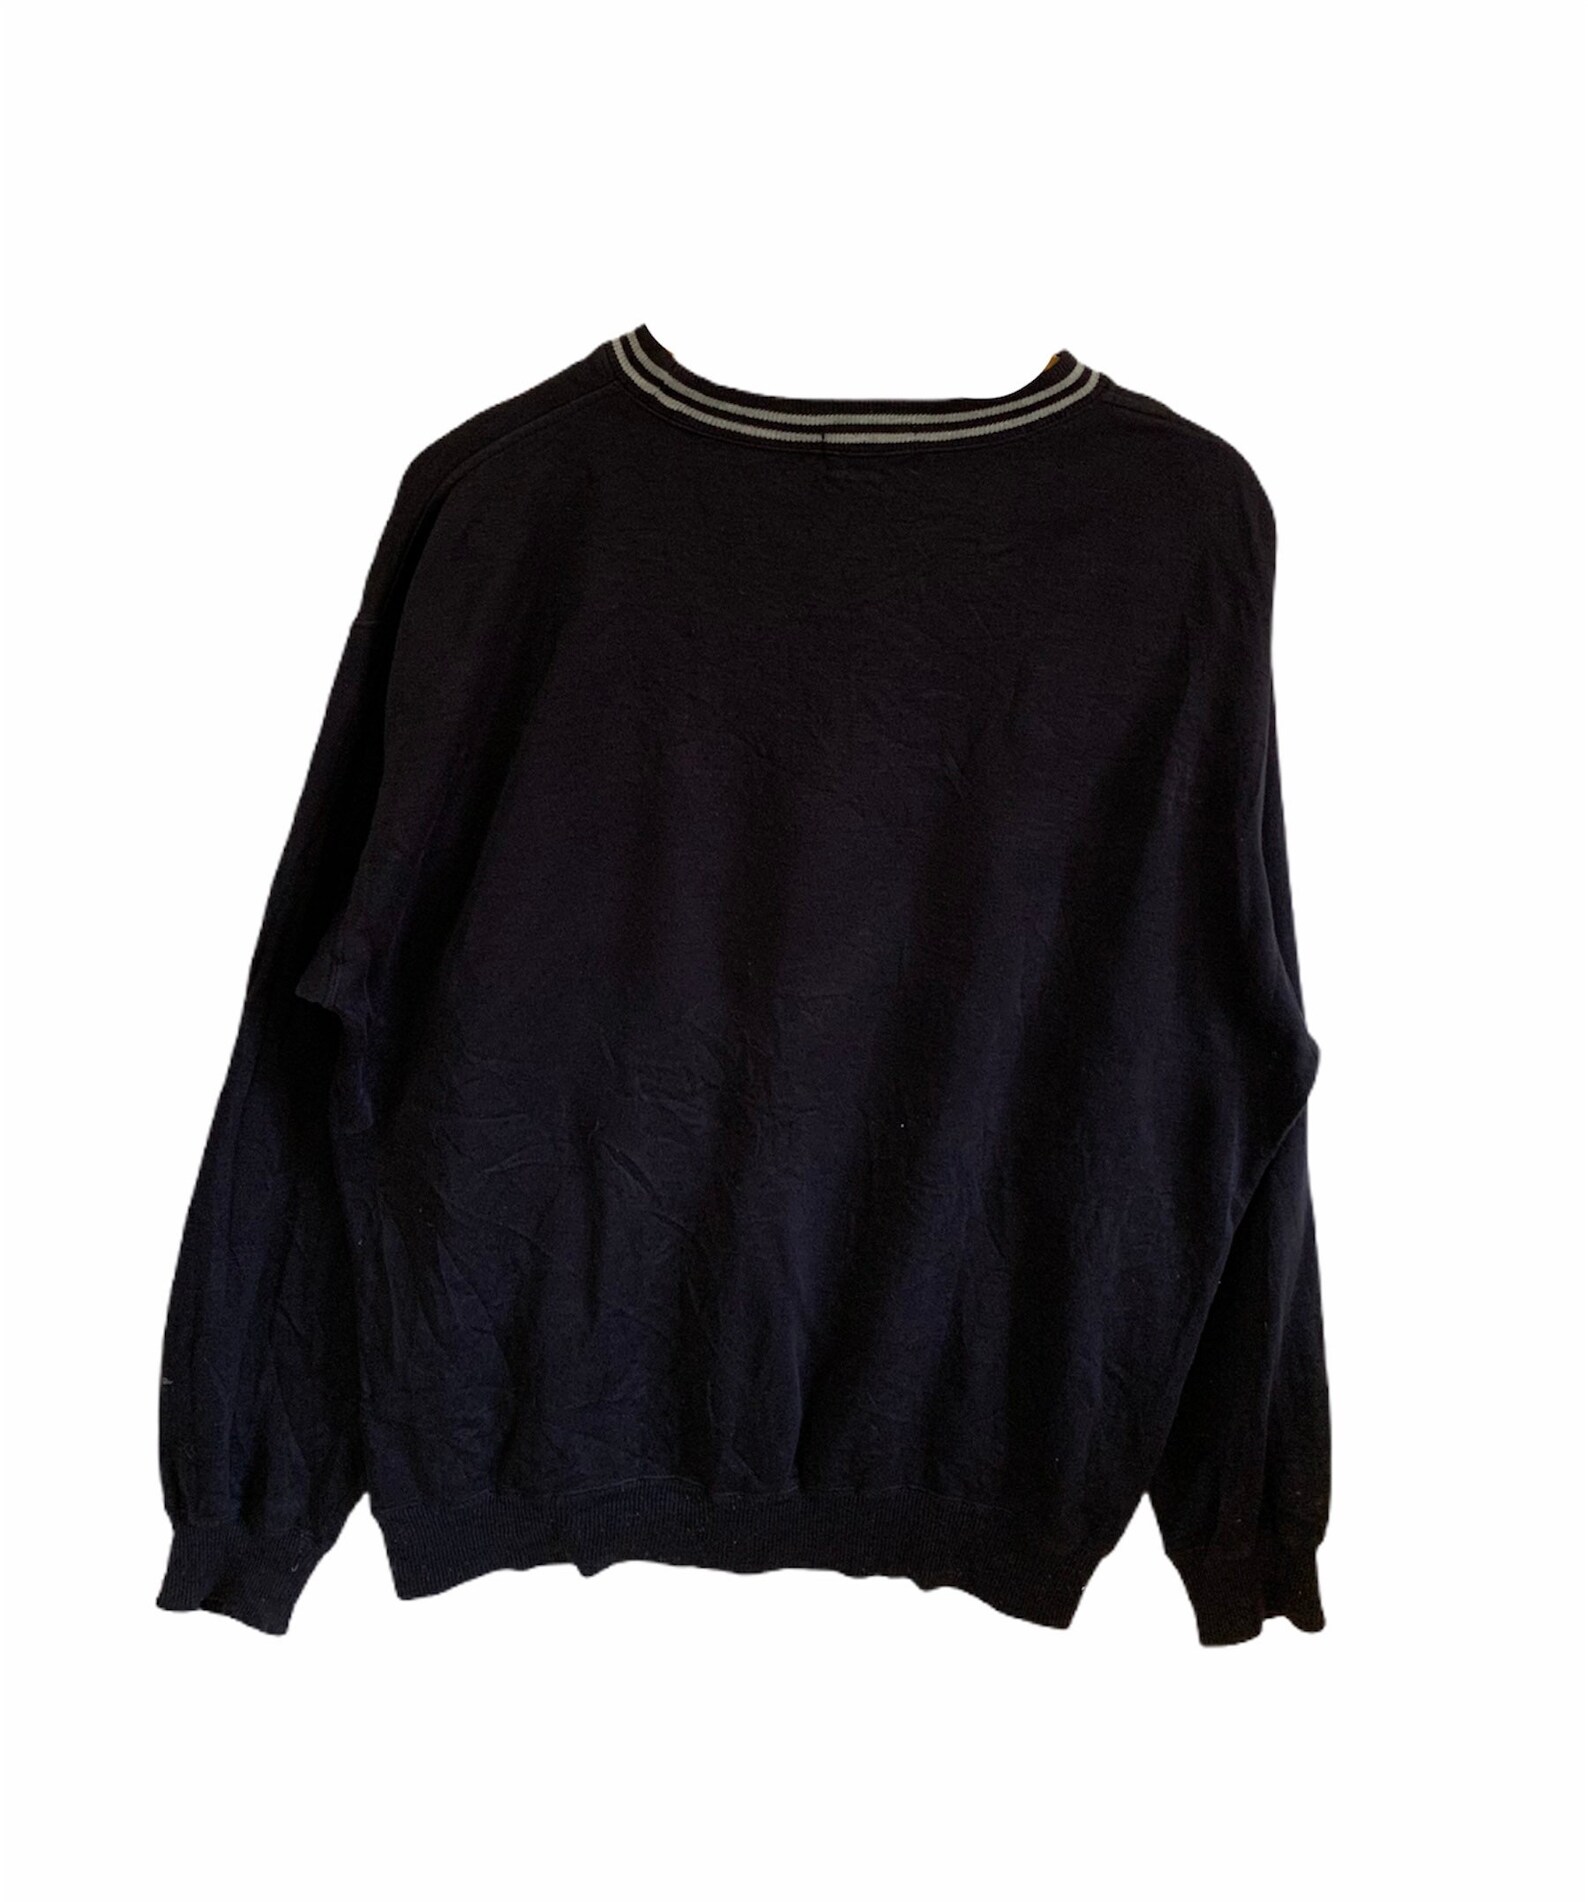 Vintage Christian Mode Sweatshirt Large Size Jumper Pullover - Etsy